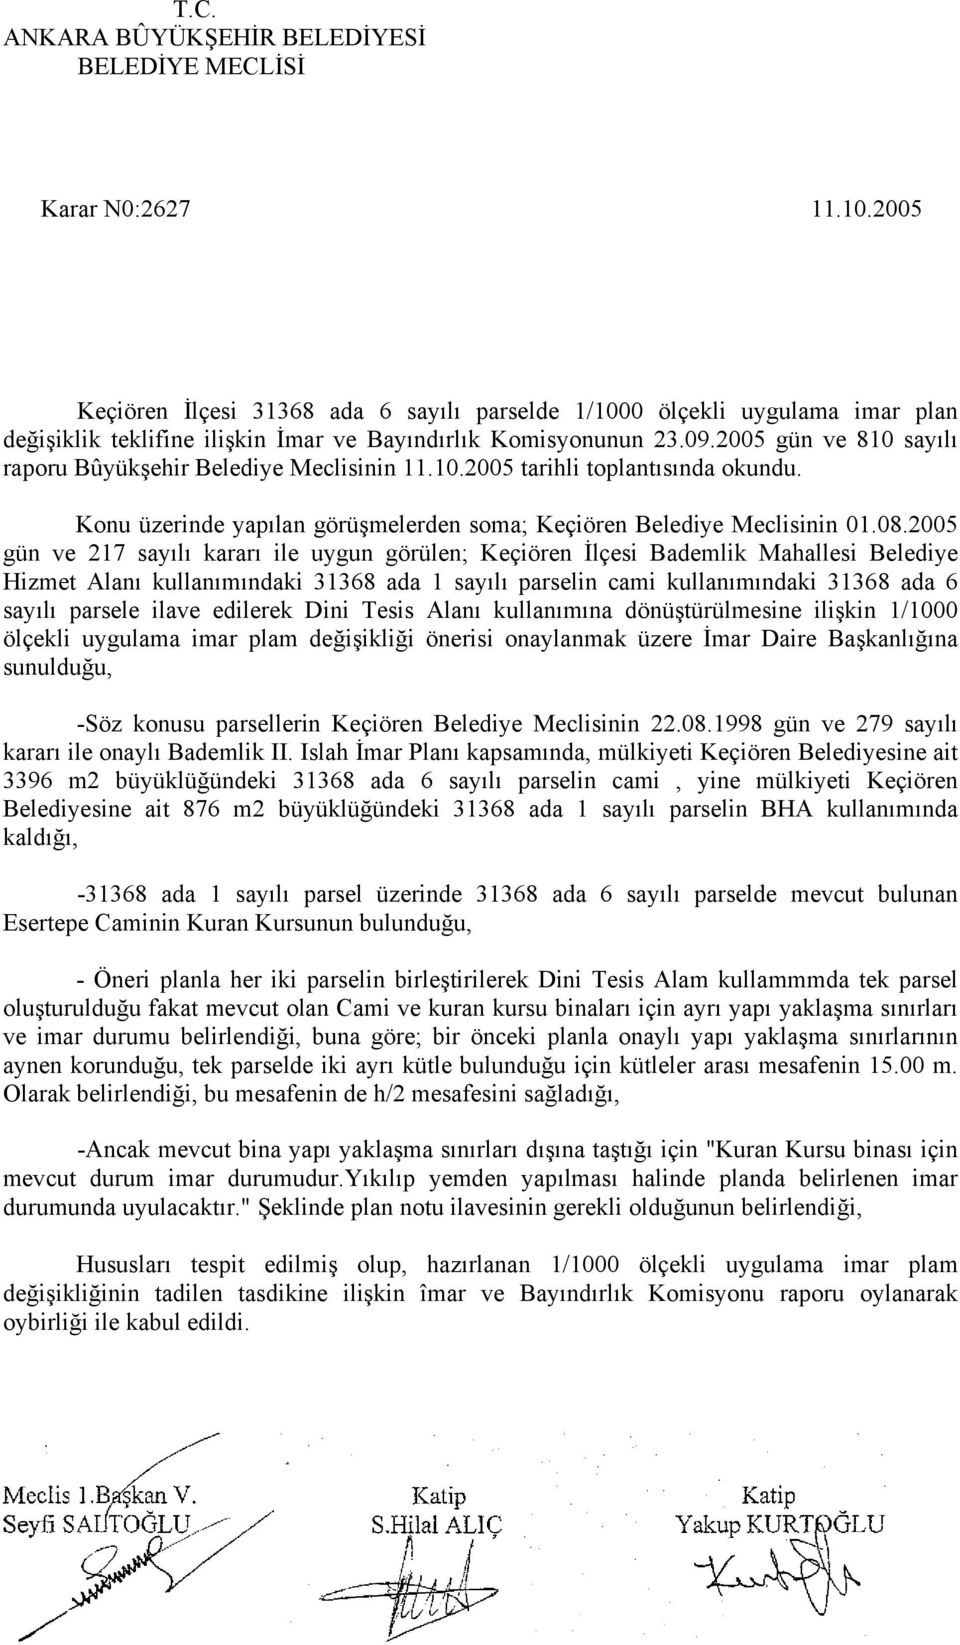 2005 gün ve 810 sayılı raporu Bûyükşehir Belediye Meclisinin 11.10.2005 tarihli toplantısında okundu. Konu üzerinde yapılan görüşmelerden soma; Keçiören Belediye Meclisinin 01.08.